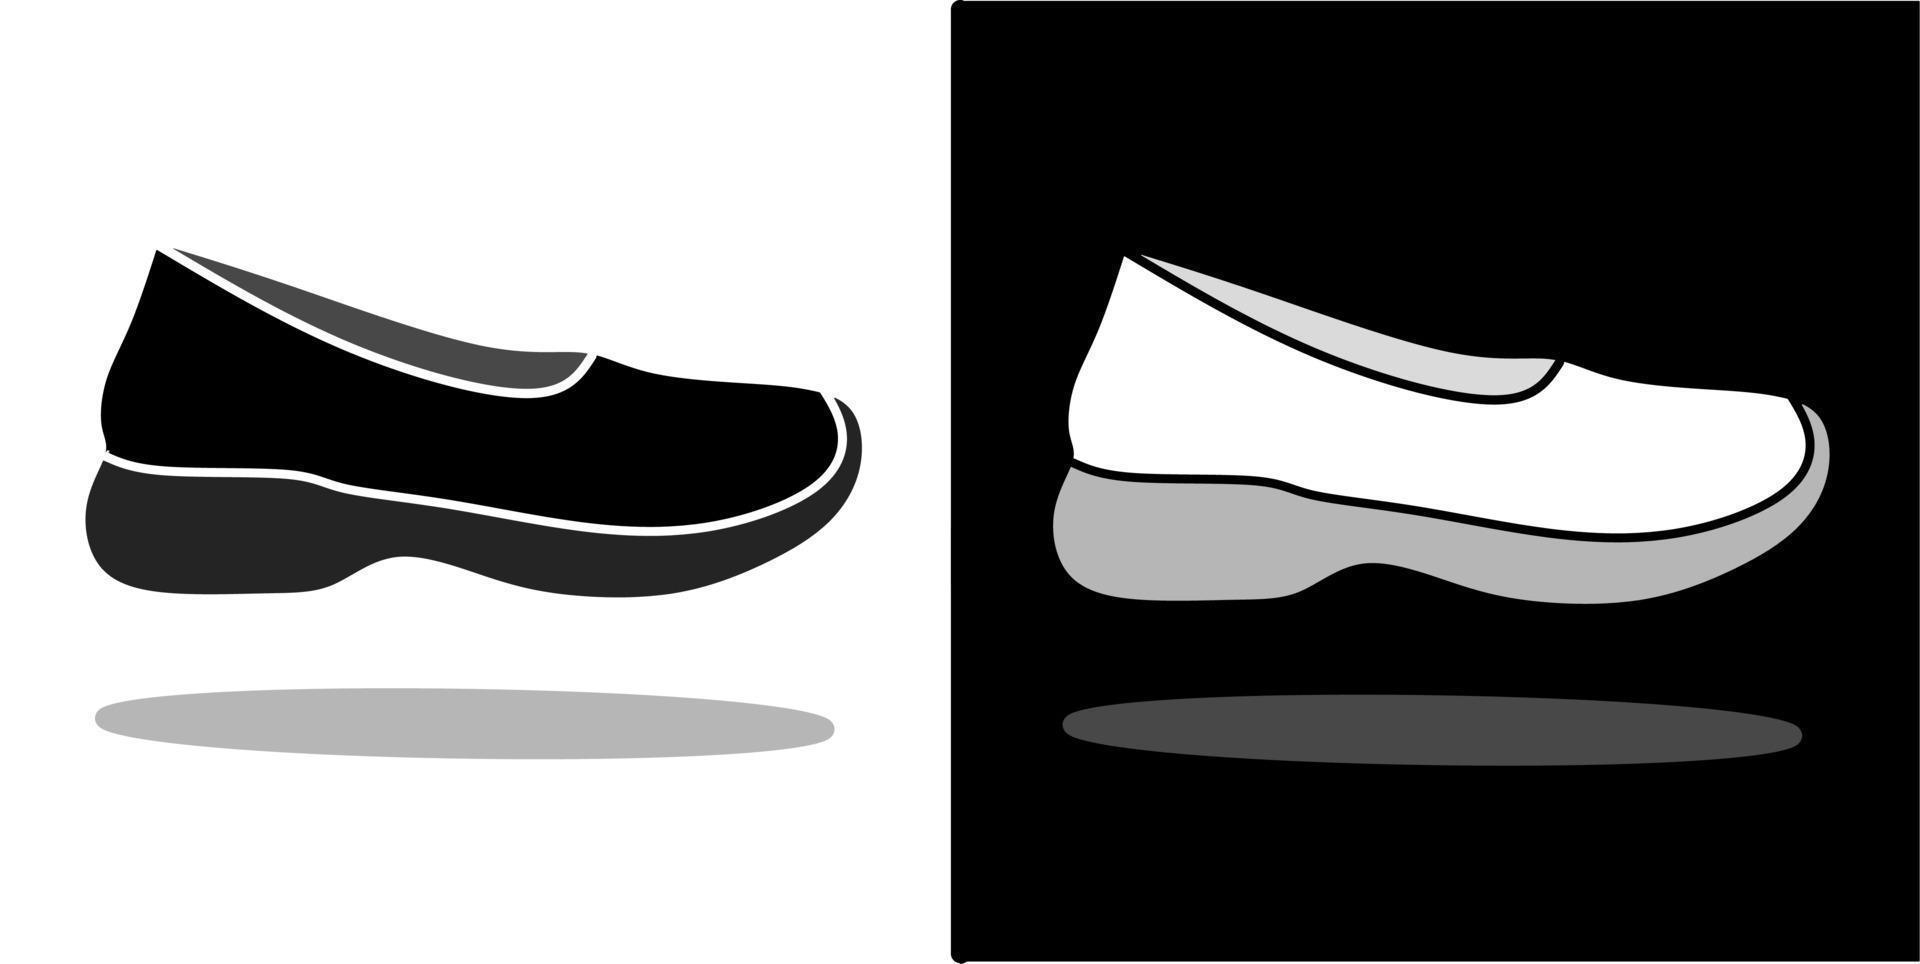 vektor illustration av skor, isolerat på svart och vit bakgrund design